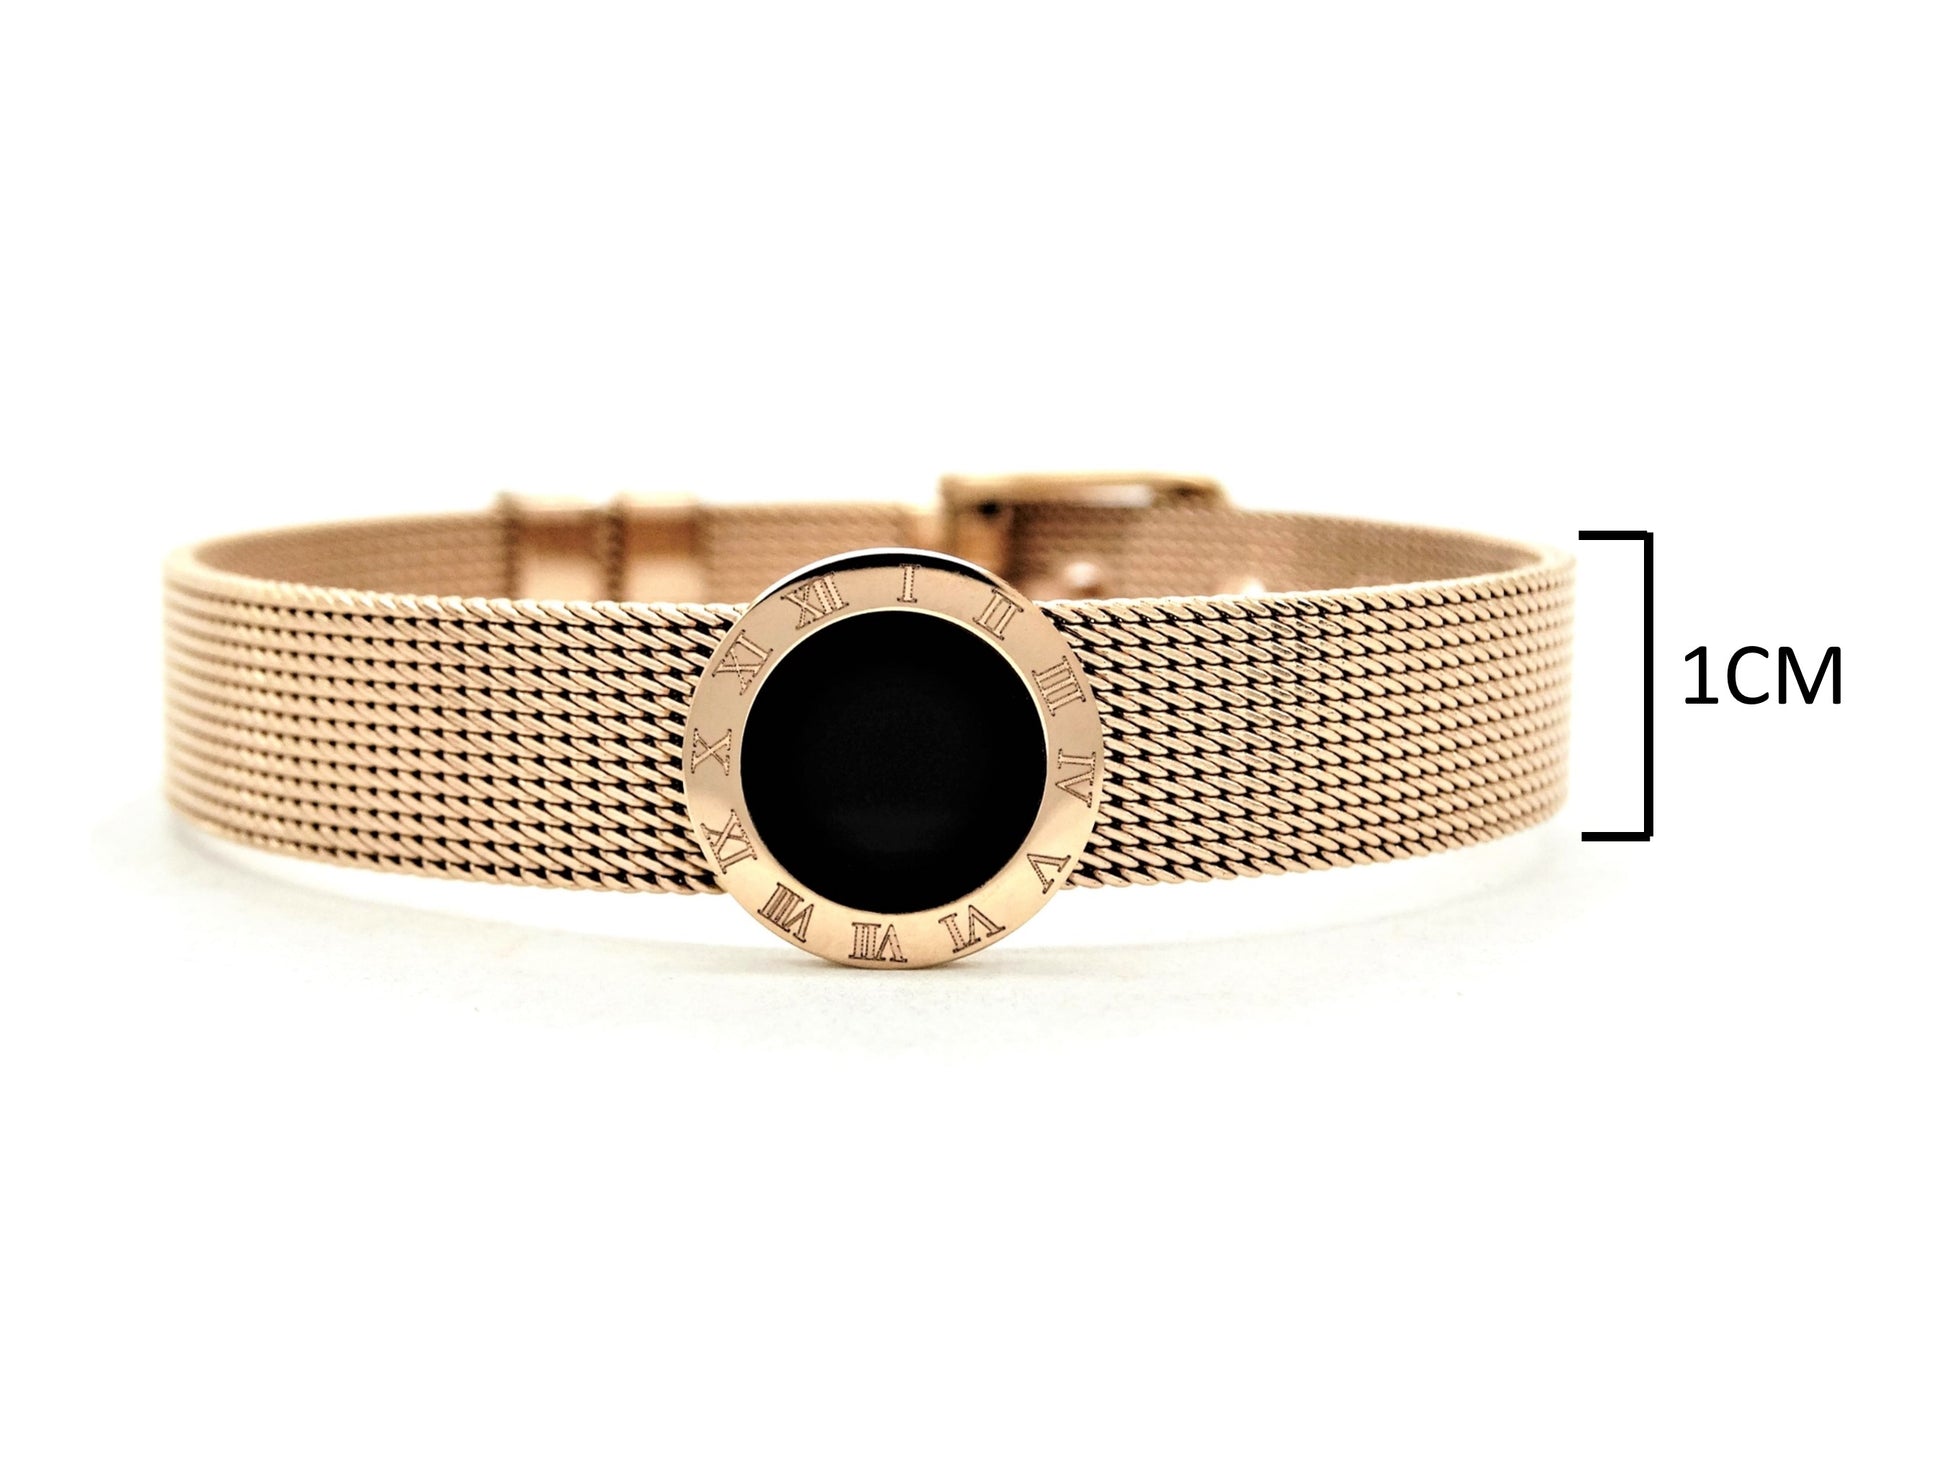 Rose gold black moonstone belt bracelet MEASUREMENT